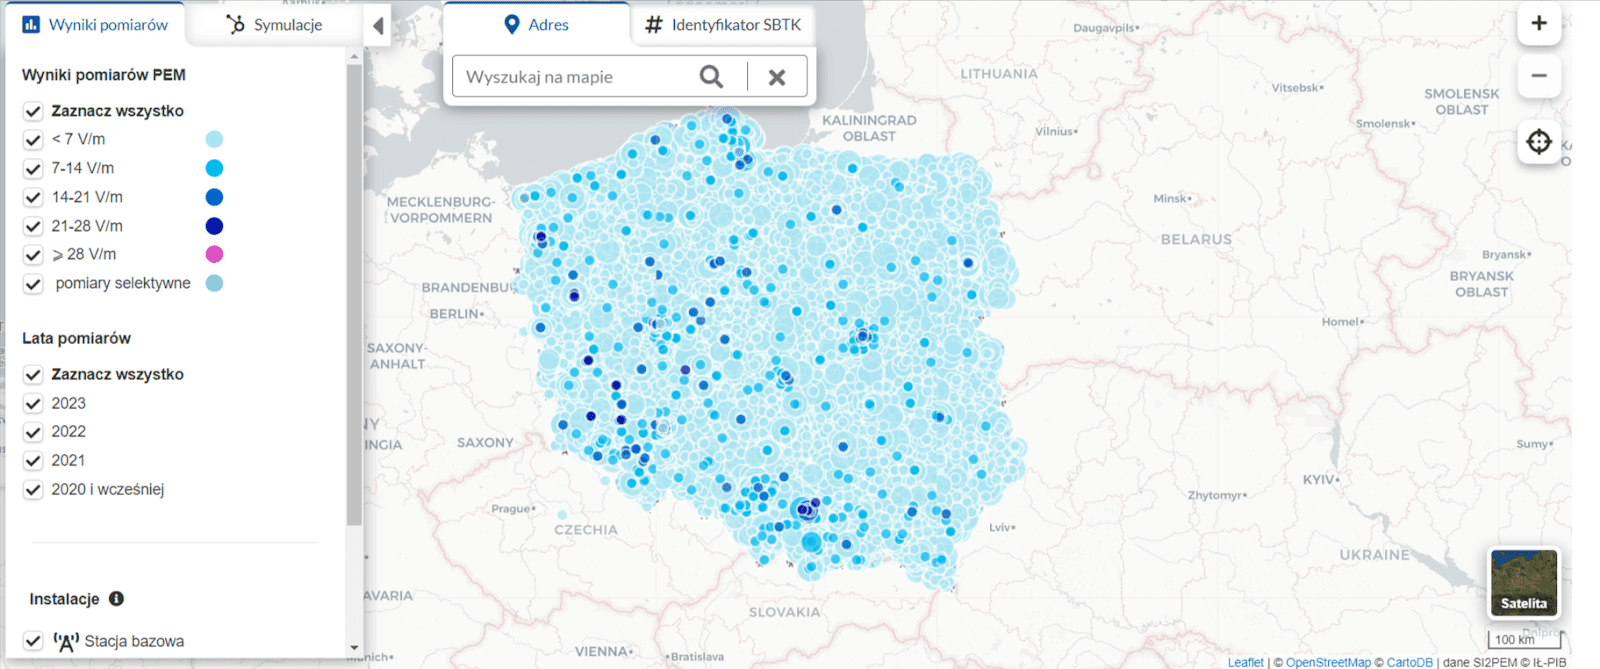 Mapa, która przedstawia pomiary promieniowania na terenie Polski. Z mapy wynika, że normy promieniowania nie są przekroczone w żadnym miejscu na terenie kraju.